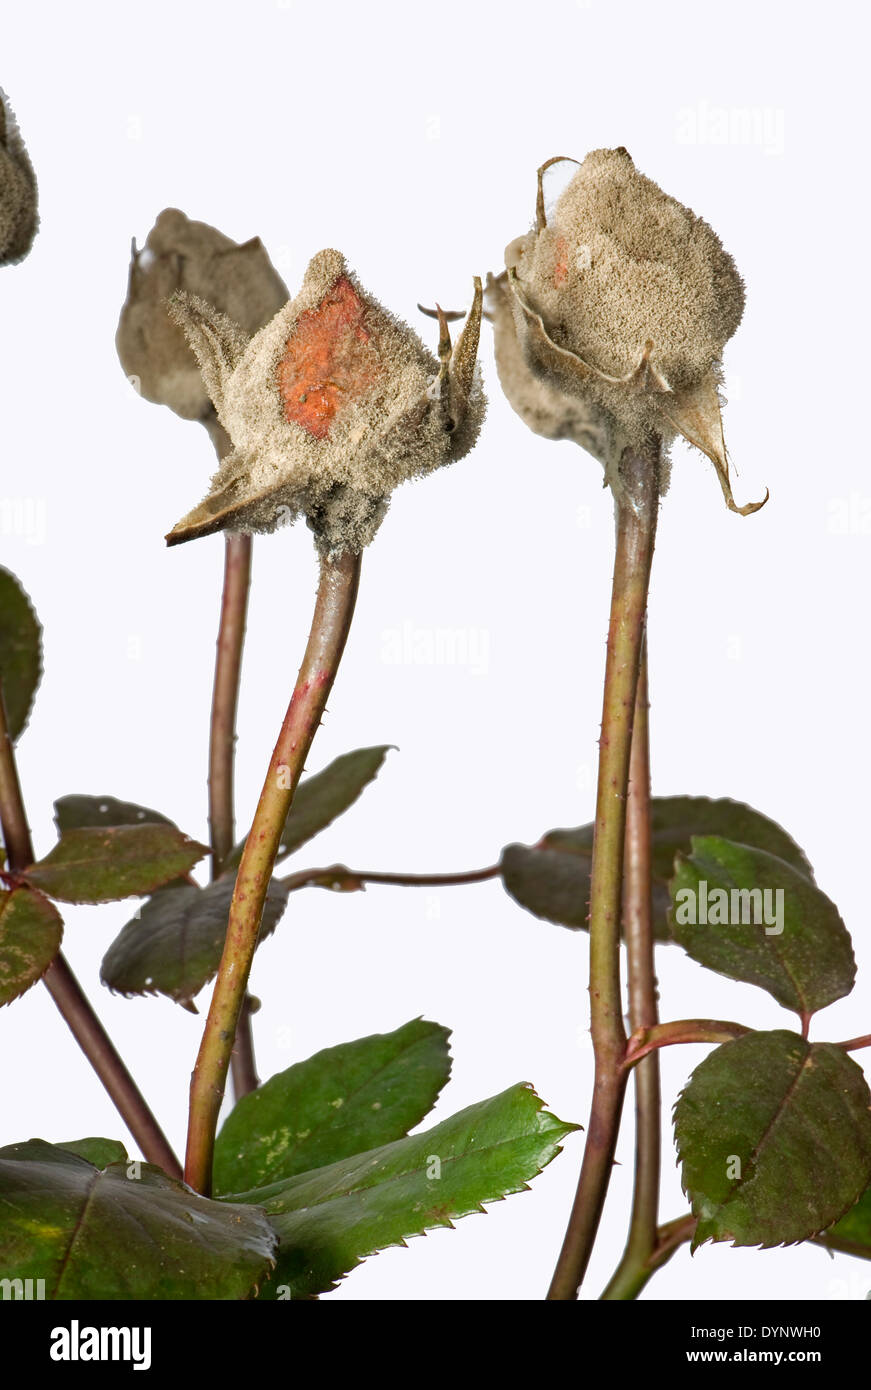 El moho gris, Botrytis cinerea, desarrollo myclium en invernadero criados rose capullos Foto de stock